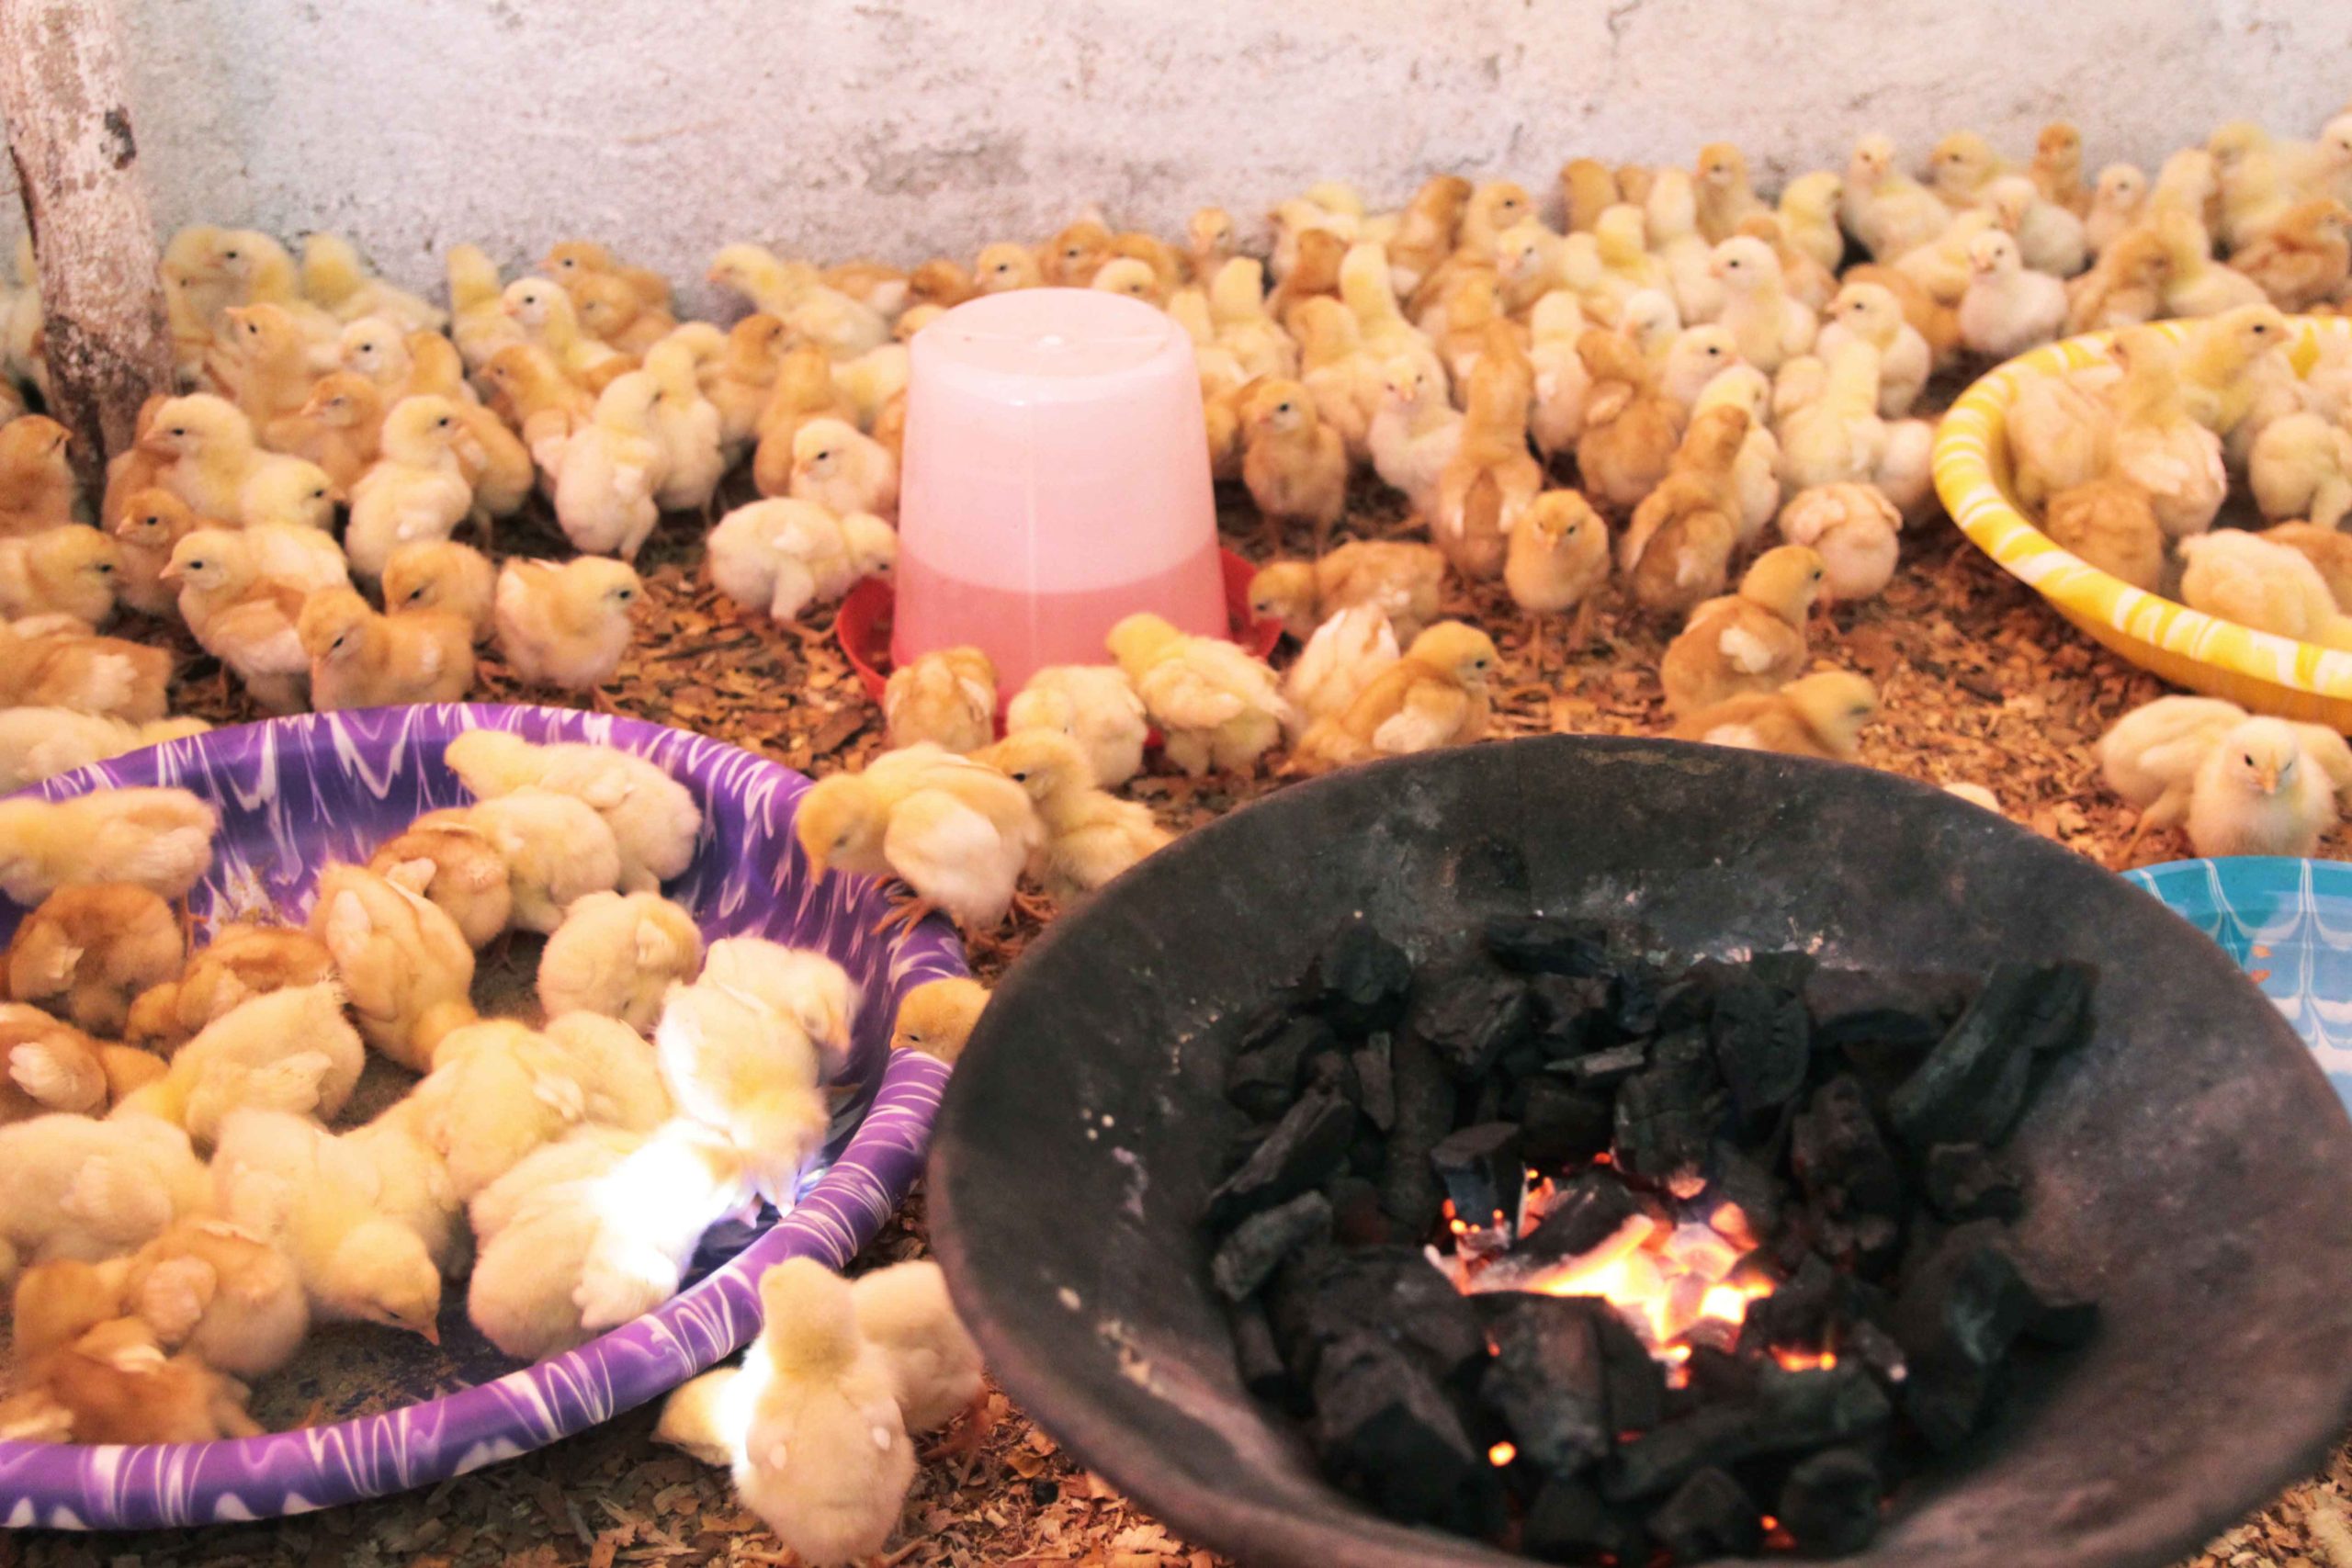 Chickens raised by Ciatta, a farmer in Liberia